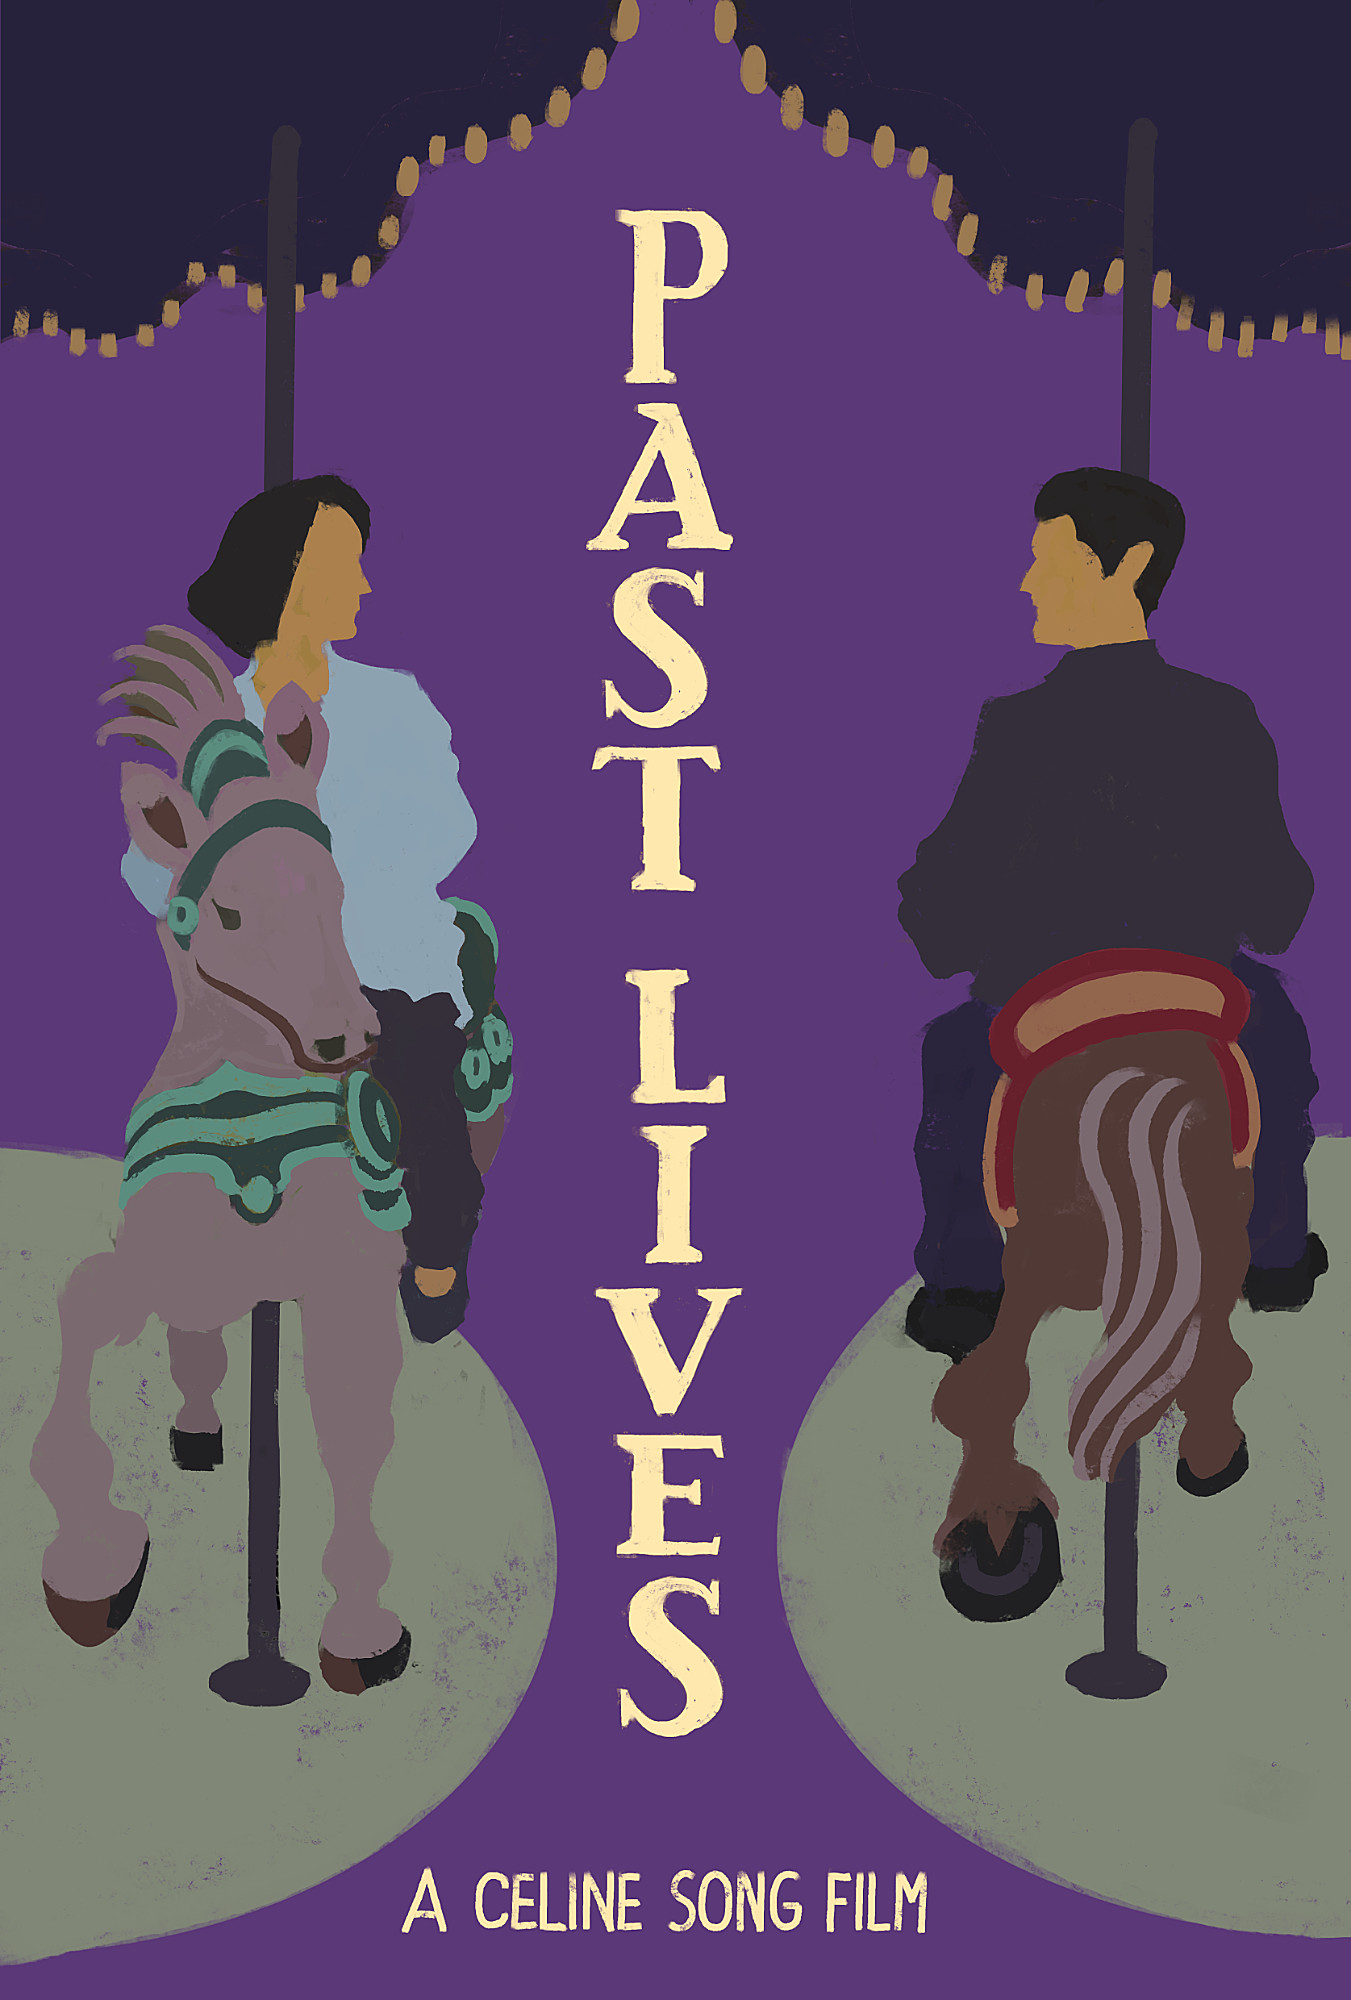 Cartaz alternativo, do próprio autor, Ivan Jerônimo, do filme “Vidas Passadas” (Past Lives), mostrando um homem e uma mulher montados em cavalos de carrosséis que giram em sentido oposto